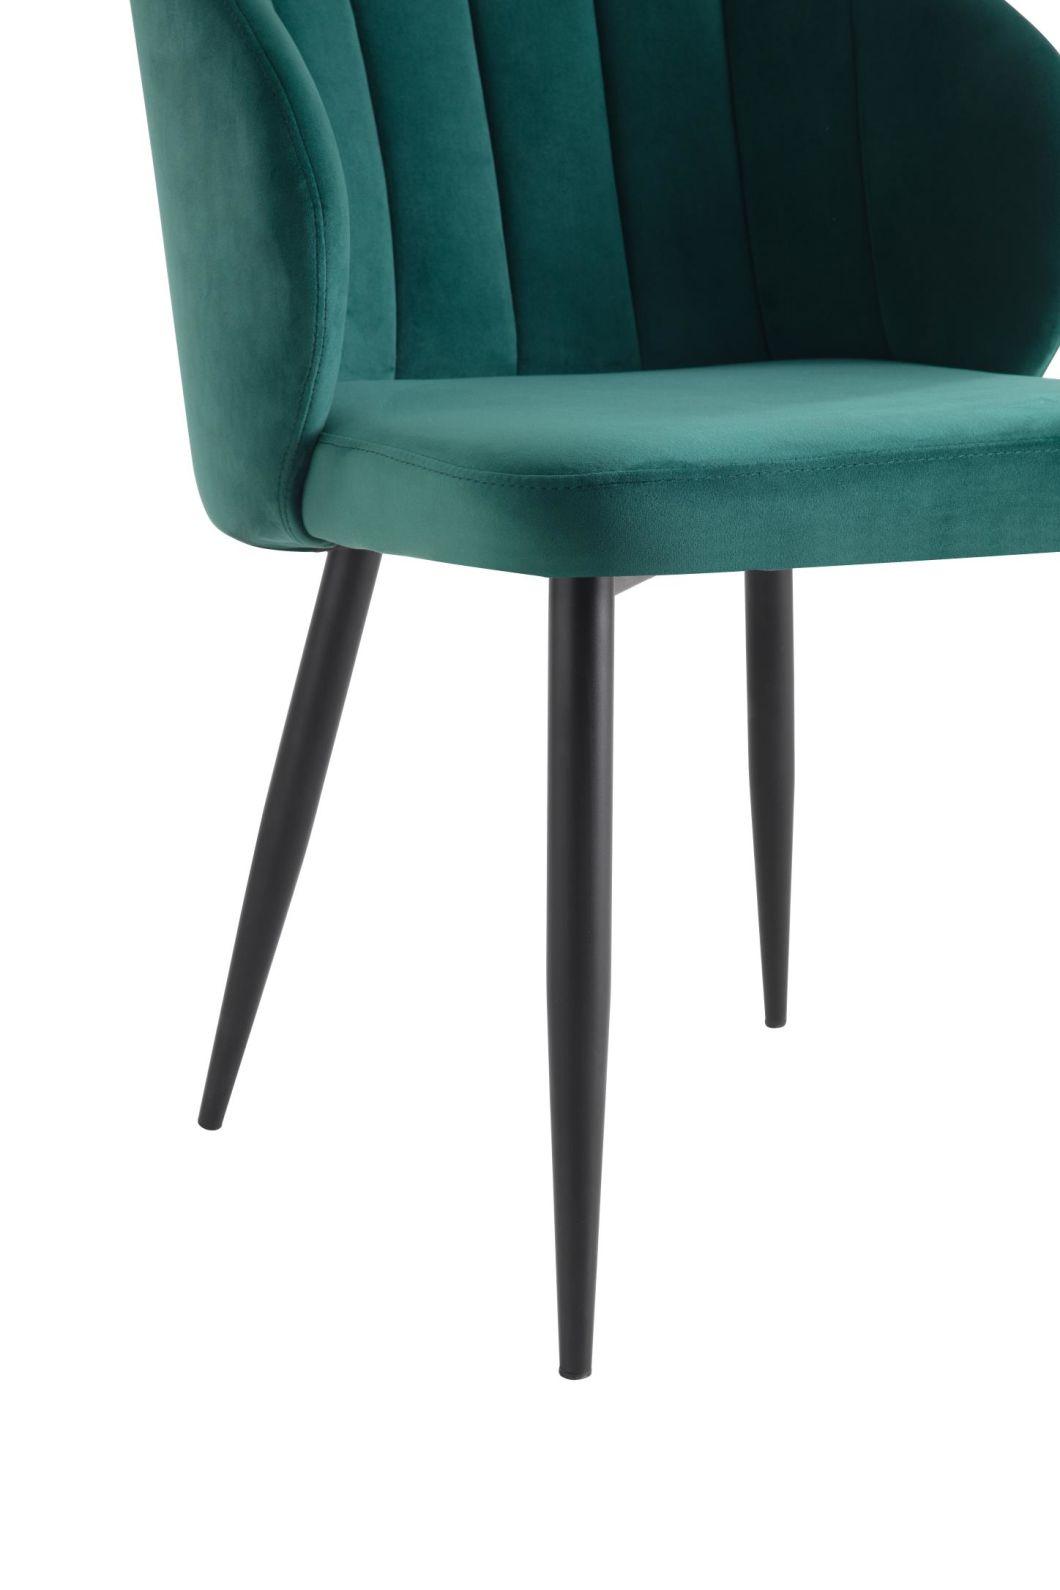 Modern European Style Hotel Restaurant Chair Metal Legs Velvet Dining Chair